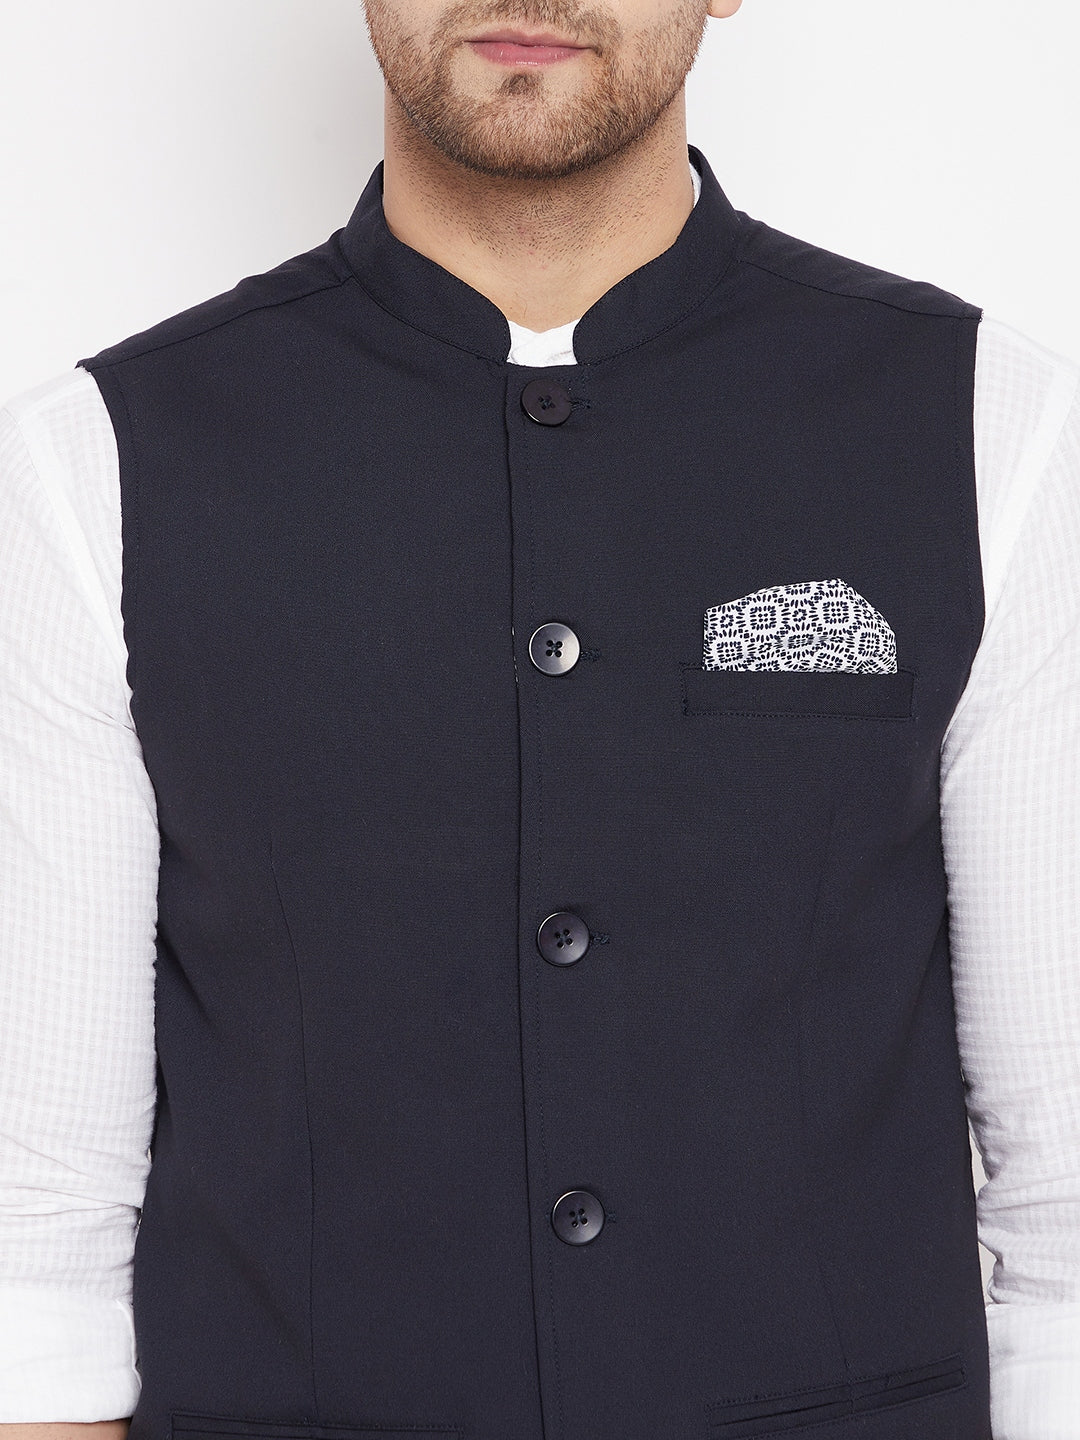 Men's Navy Color Nehru Jacket-Contrast Lining-Inbuilt Pocket Square - Even Apparels